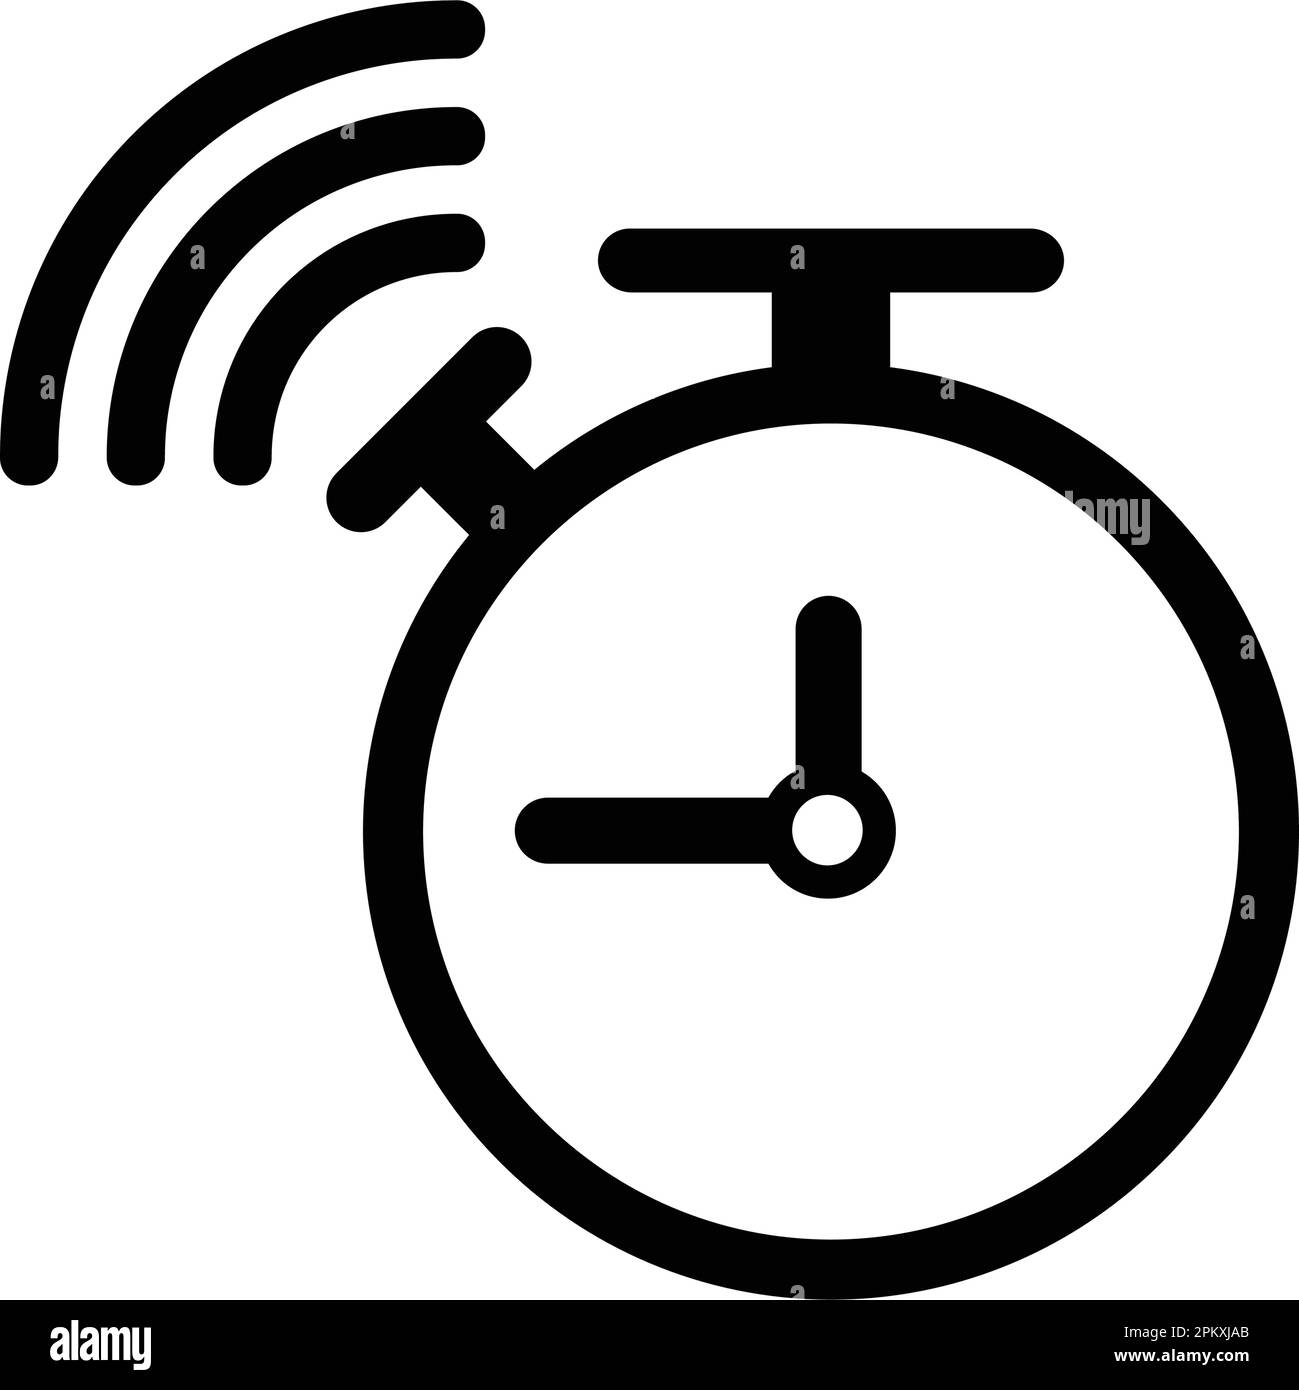 Wecker, Glockensymbol ist auf weißem Hintergrund isoliert. Verwendung für Grafik- und Webdesign oder kommerzielle Zwecke. Vektor-EPS-Datei. Stock Vektor